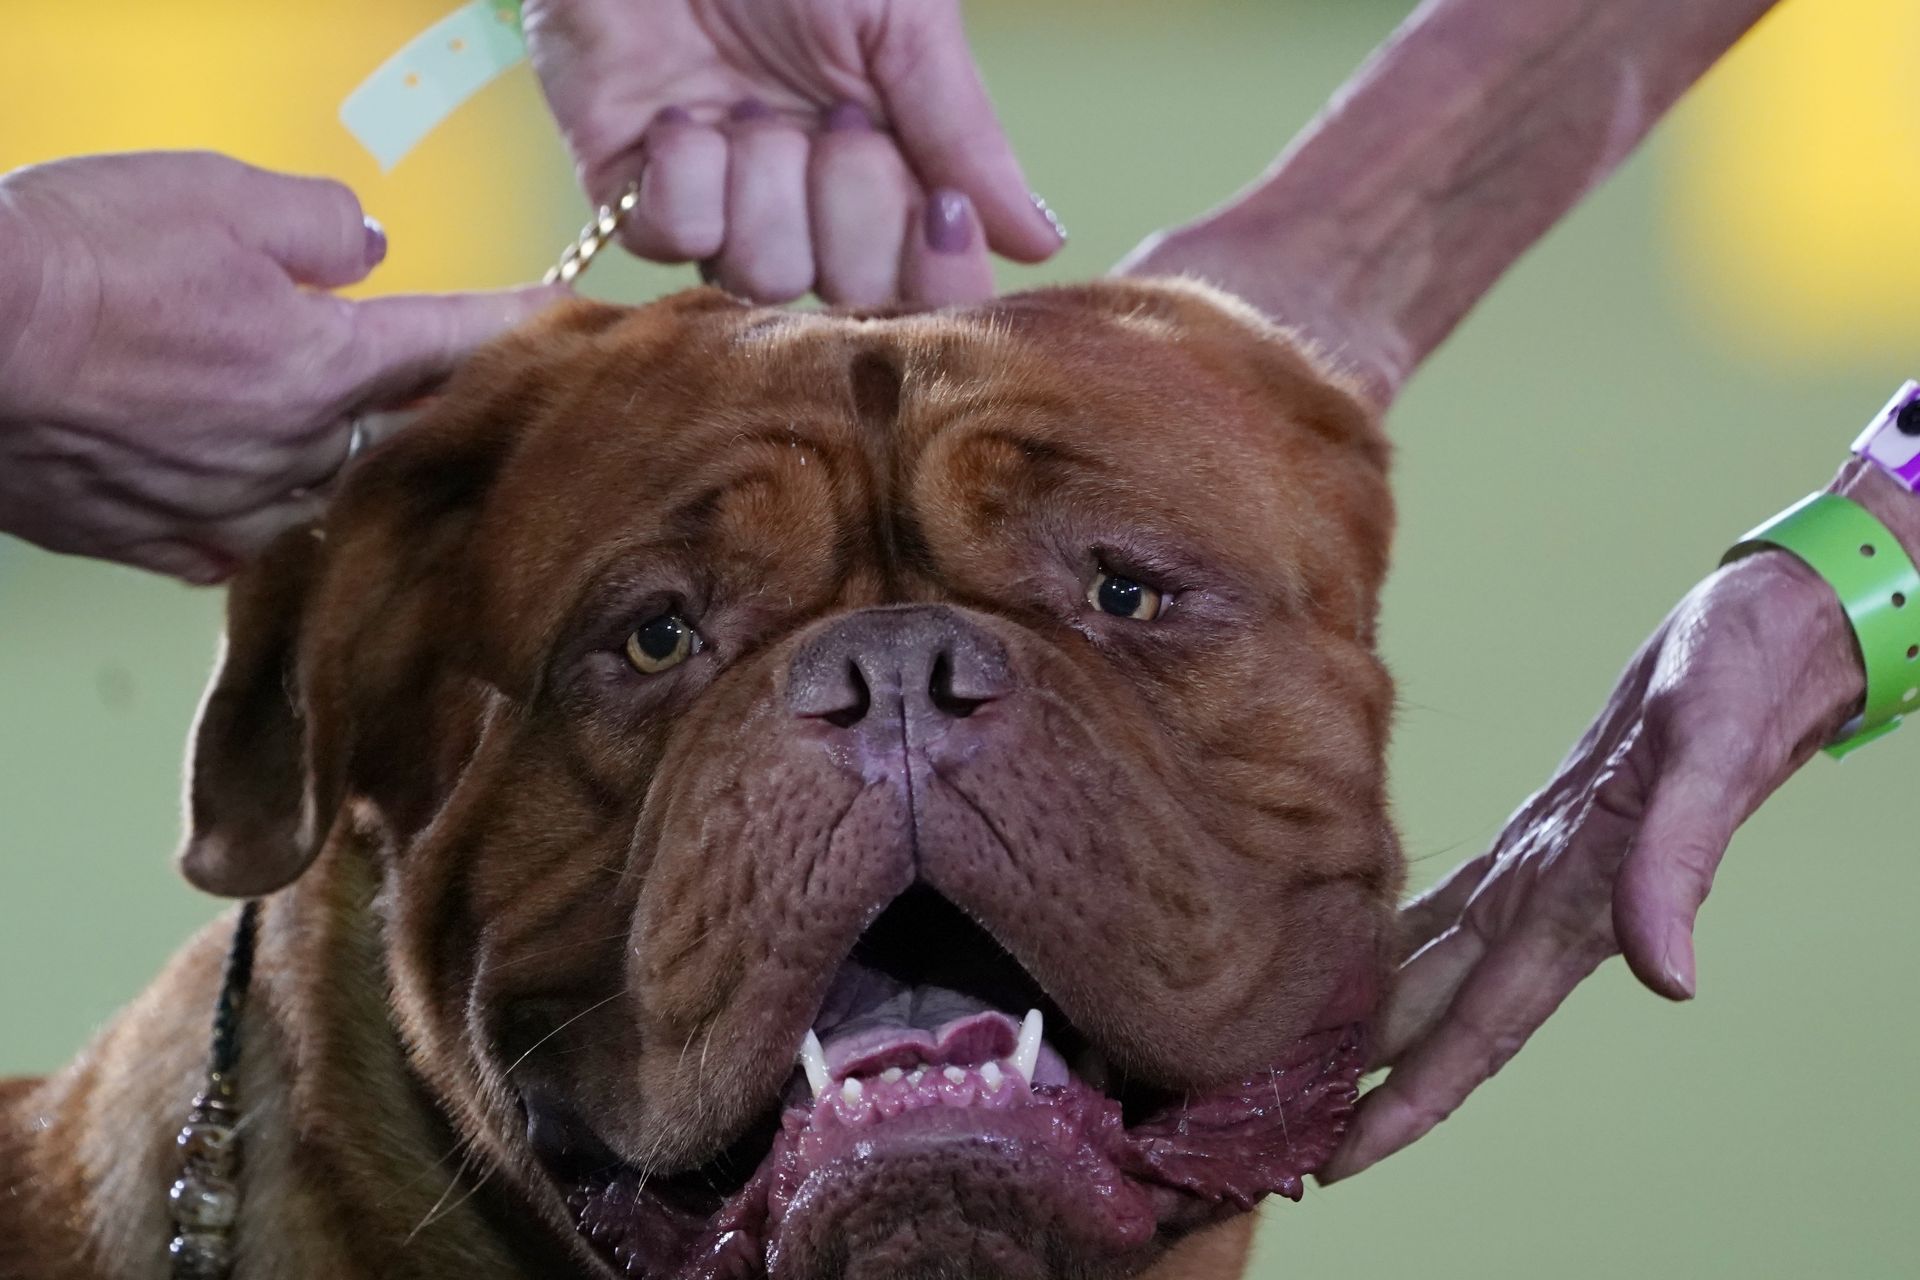  13 юни 2021 година - Dogue de Bordeaux (Кучето от Бордо) е показано пред арбитър в категорията на работната група на ревюто за кучета в Уестминстърския киноложки клуб в Таритаун, Ню Йорк. 